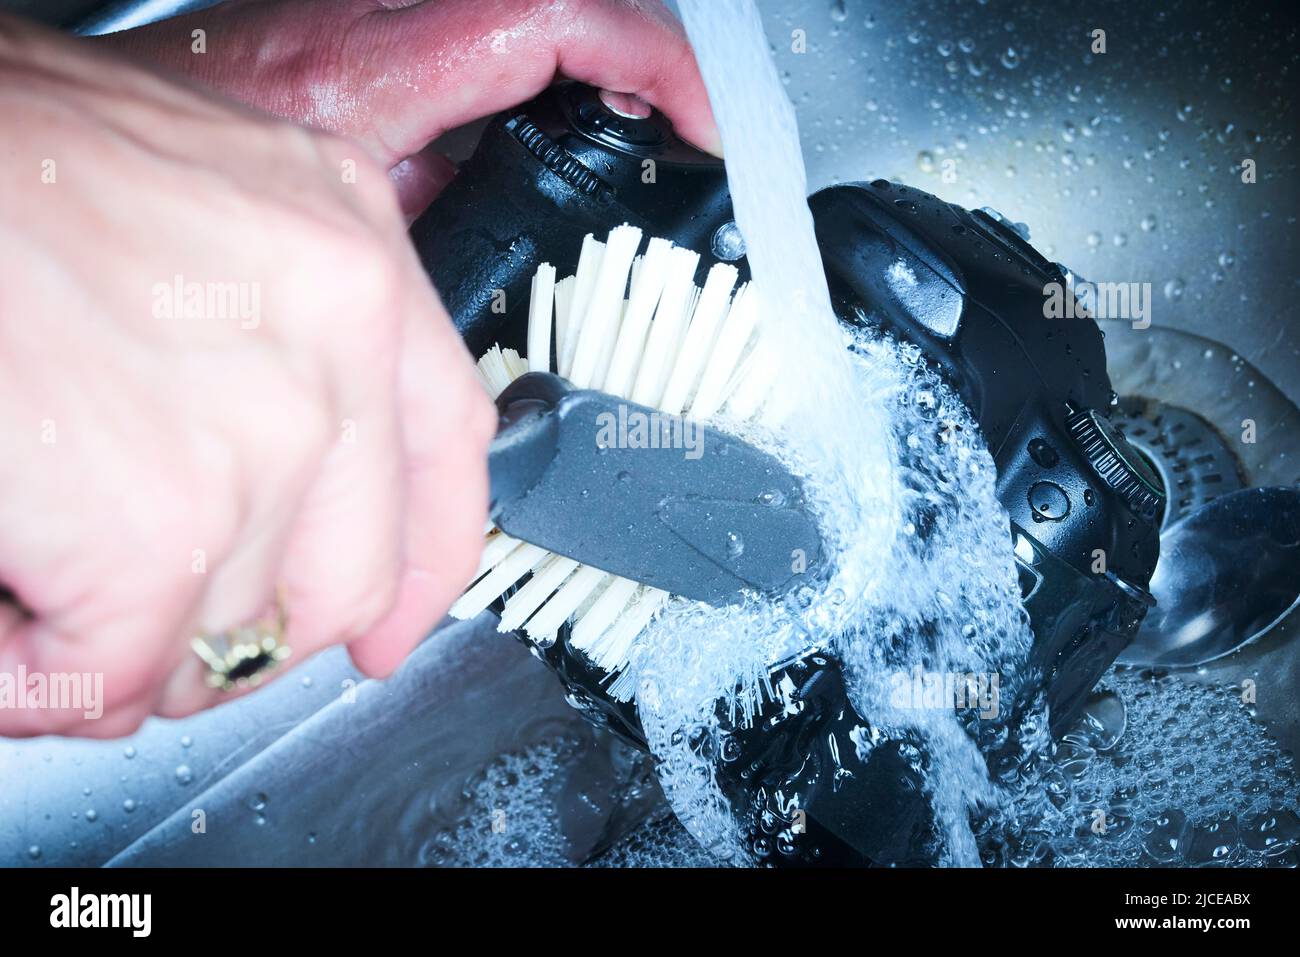 Weibliche Hände waschen dslr-Kamera als schmutziges Geschirr fließendes Wasser in der Spüle. Verrückter Fotograf reinigt den Kamerabild-Sensor schlecht mit Wasser Stockfoto